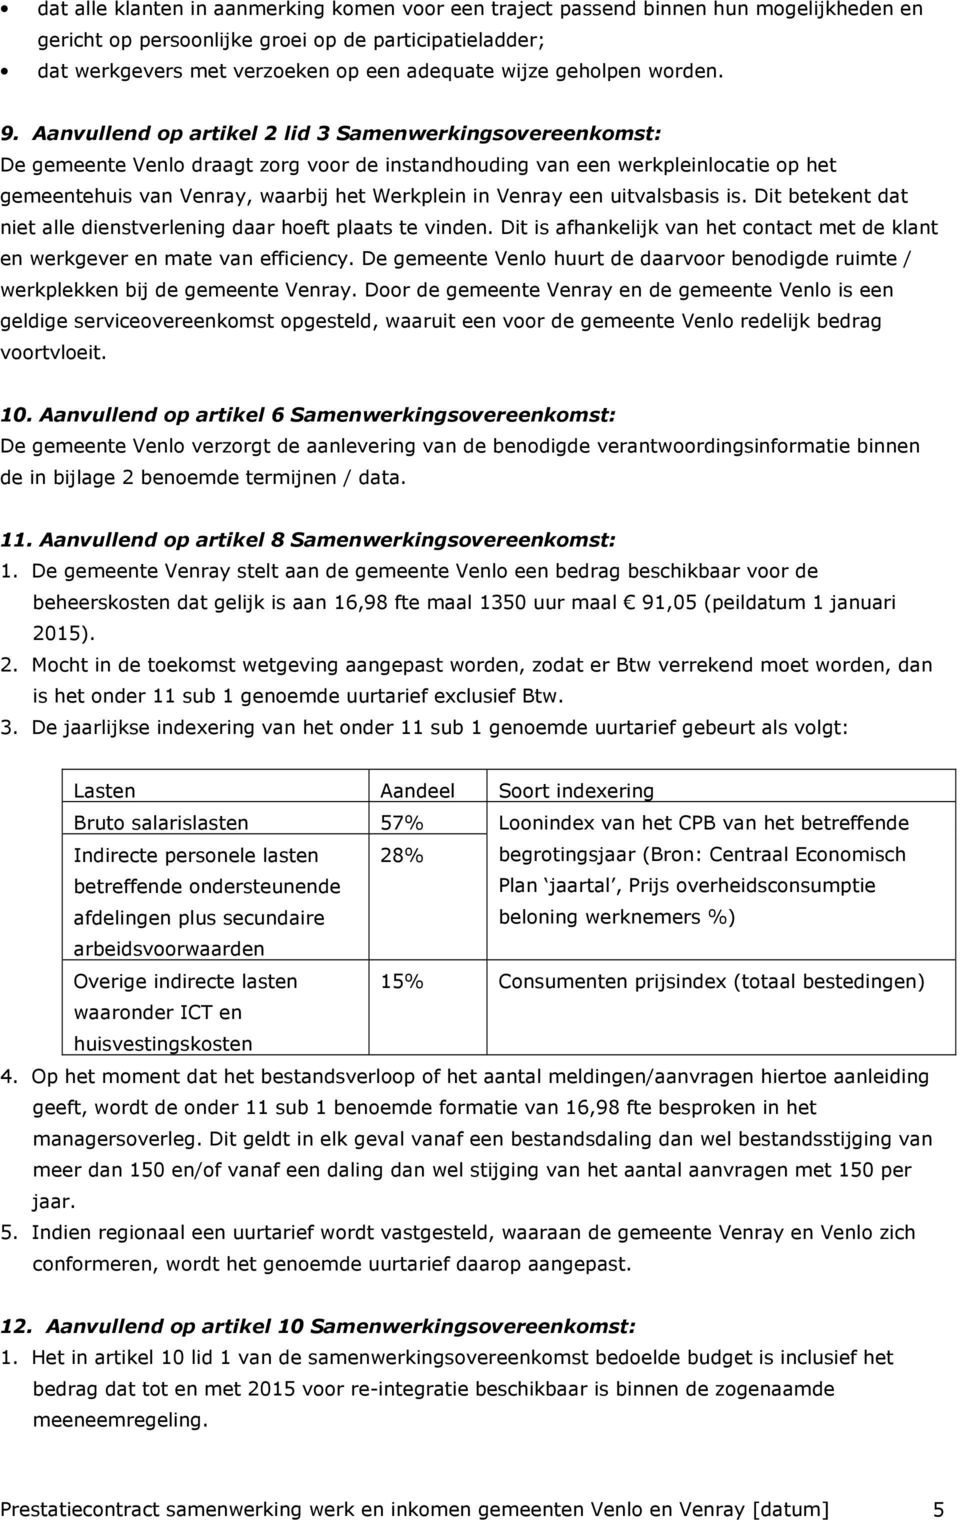 Aanvullend op artikel 2 lid 3 Samenwerkingsovereenkomst: De gemeente Venlo draagt zorg voor de instandhouding van een werkpleinlocatie op het gemeentehuis van Venray, waarbij het Werkplein in Venray